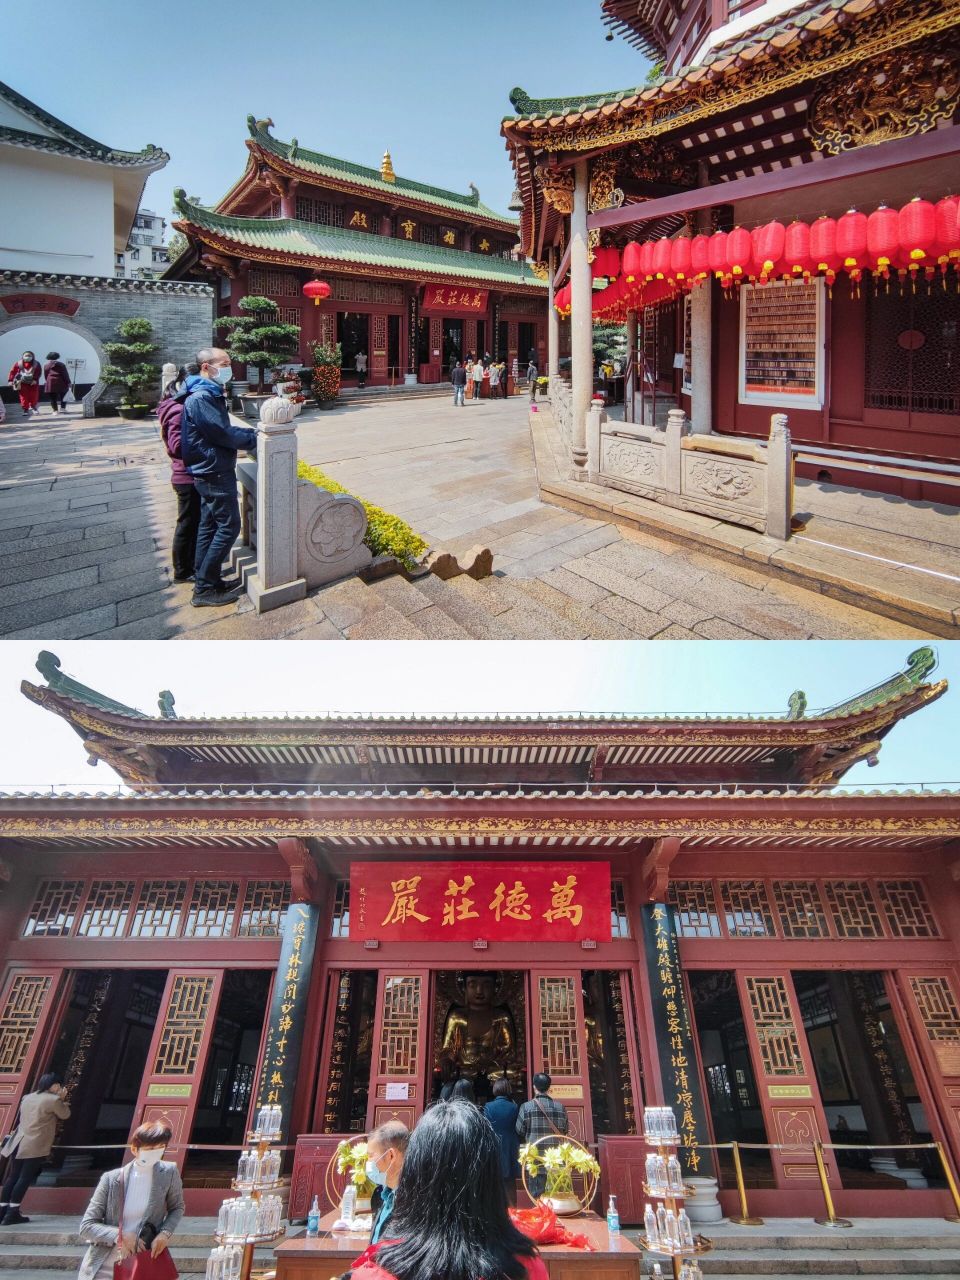 【广府四日】广州六榕寺 六榕寺,位于广州市的六榕路,是广州市一座